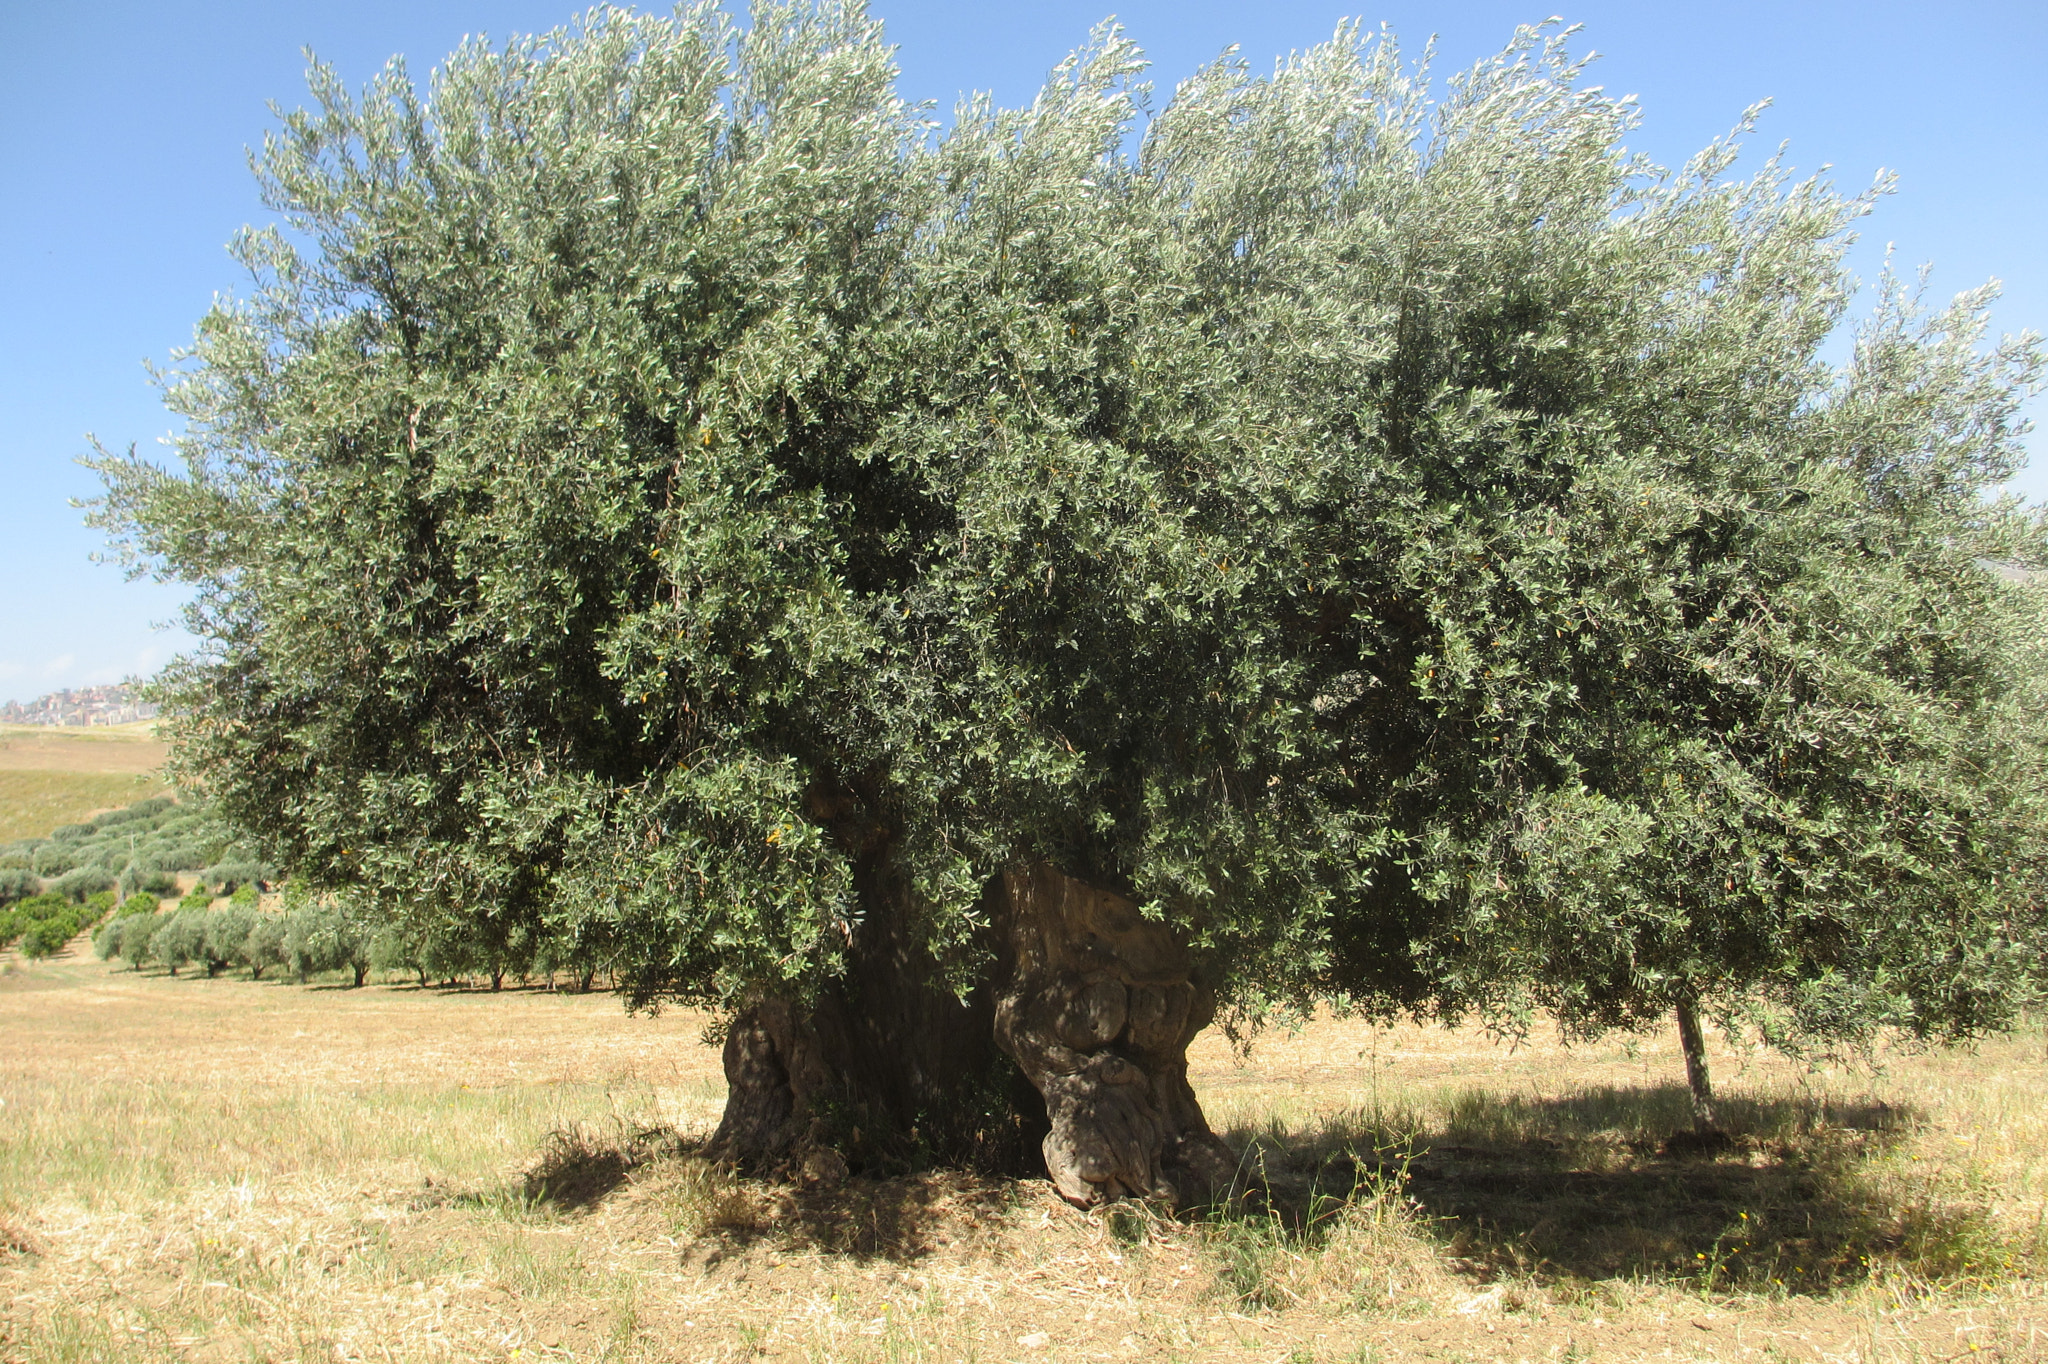 Canon PowerShot ELPH 310 HS (IXUS 230 HS / IXY 600F) sample photo. Jahre alter olivenbaum in der nähe von agrigent sizilien photography